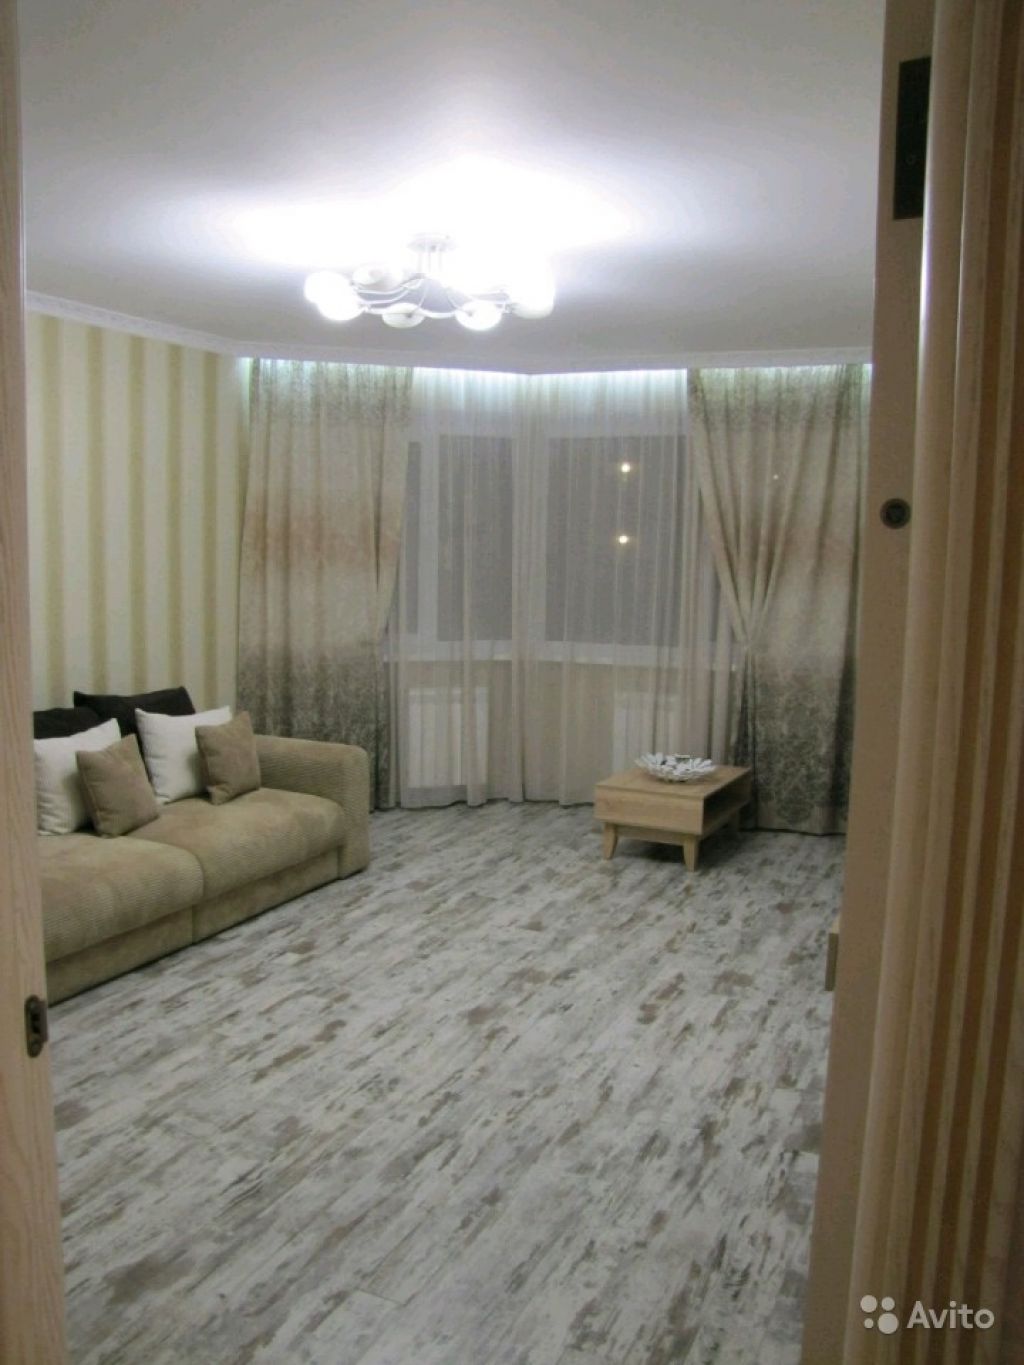 Сдам квартиру 1-к квартира 45 м² на 5 этаже 19-этажного панельного дома в Москве. Фото 1